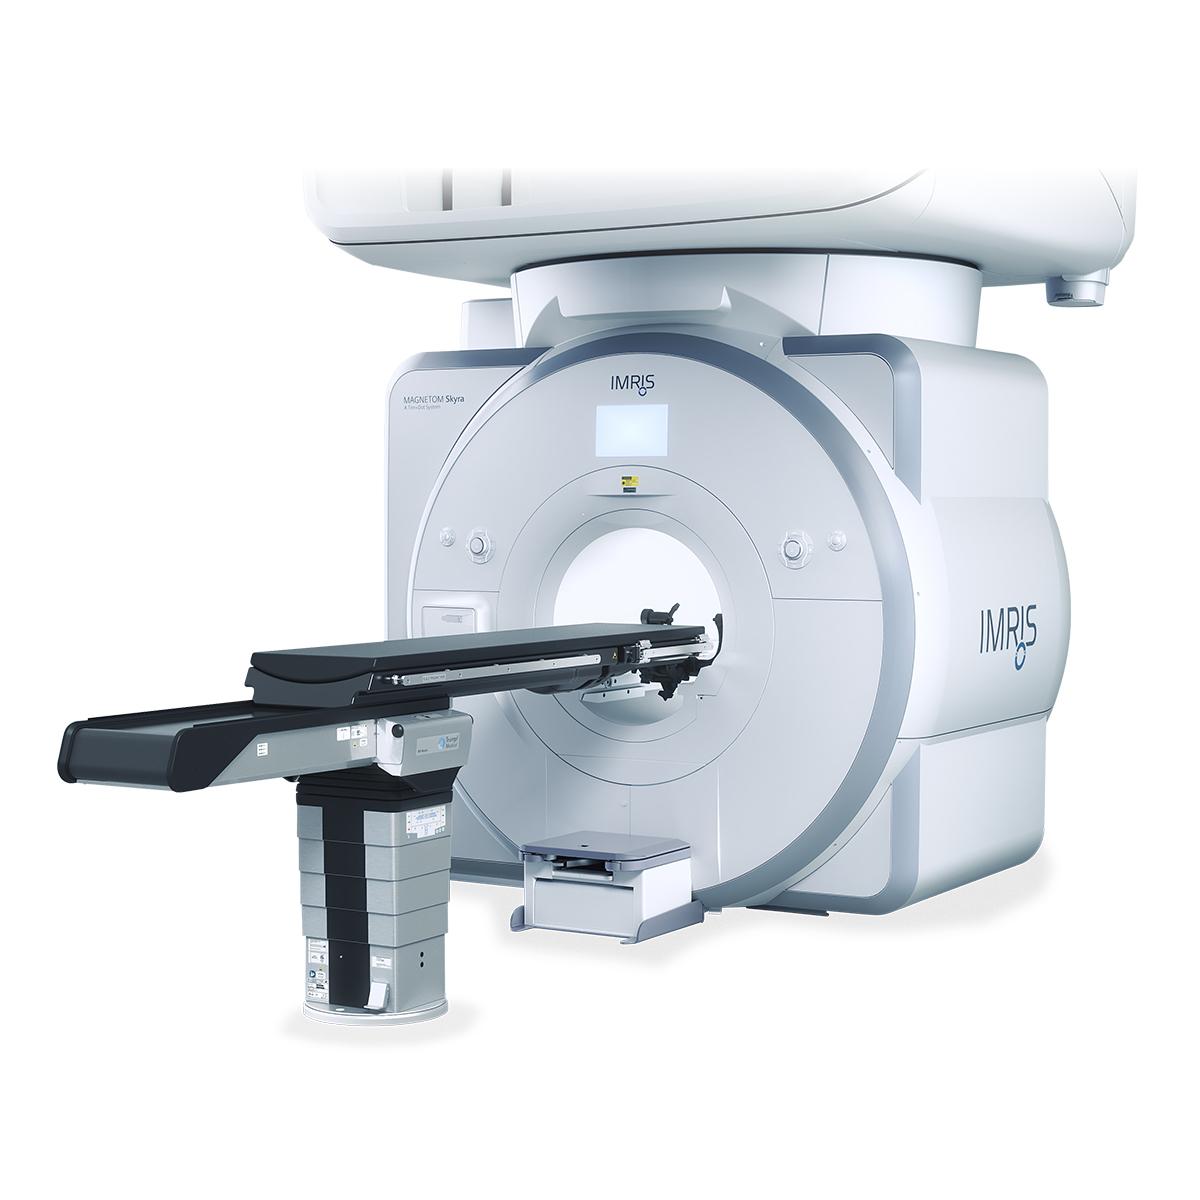 TS 7500 MR Neuro, IMRIS MRI